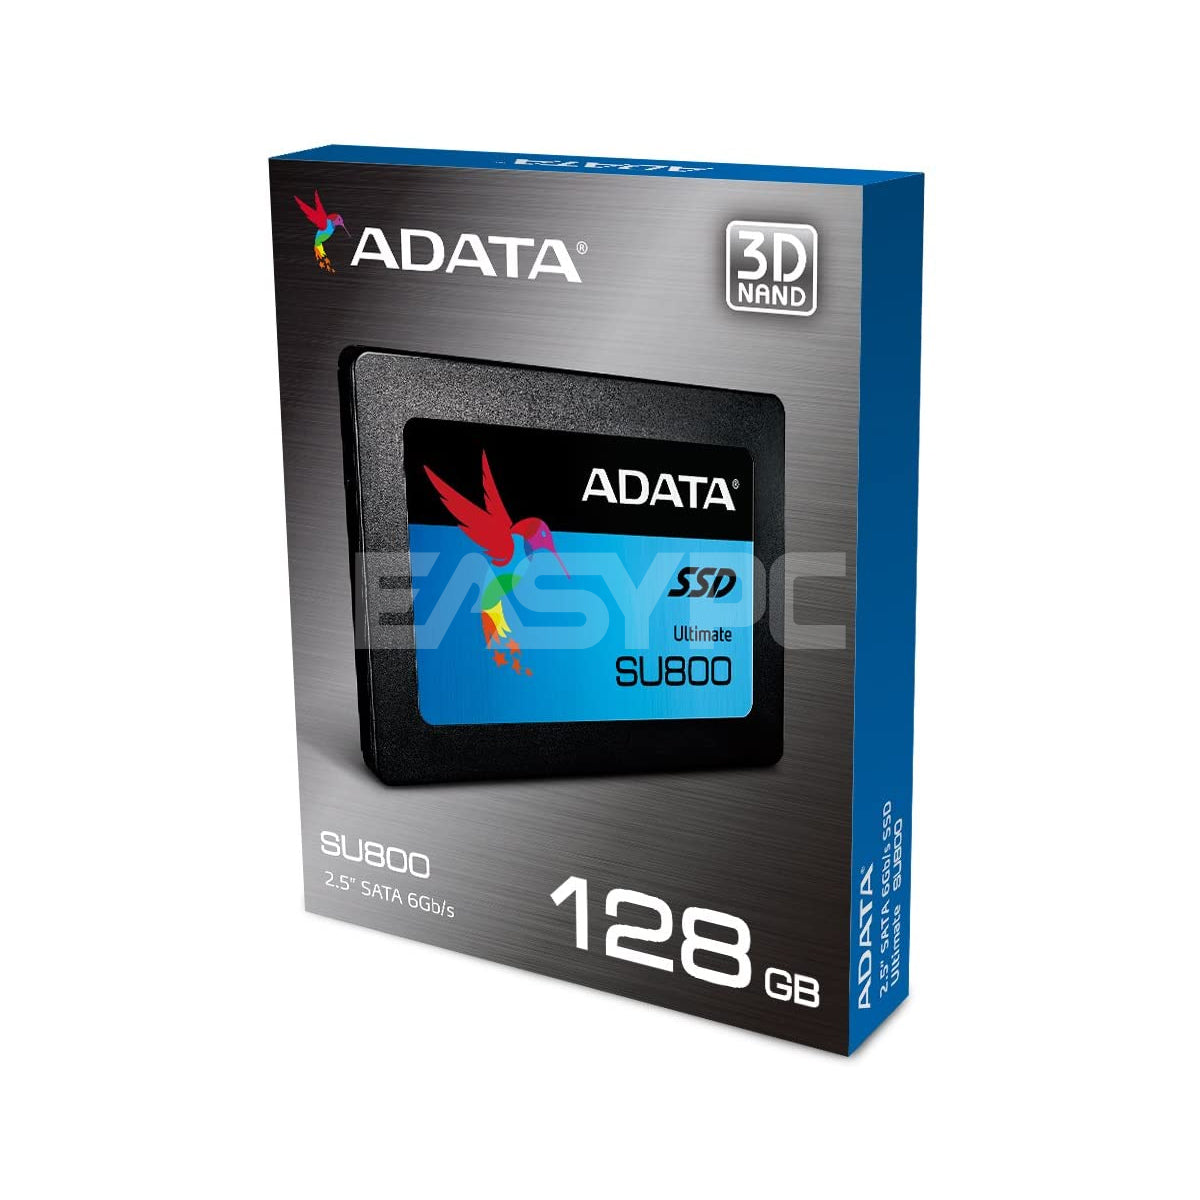 Adata SU800 Solid State Drive 128gb SATA 2.5